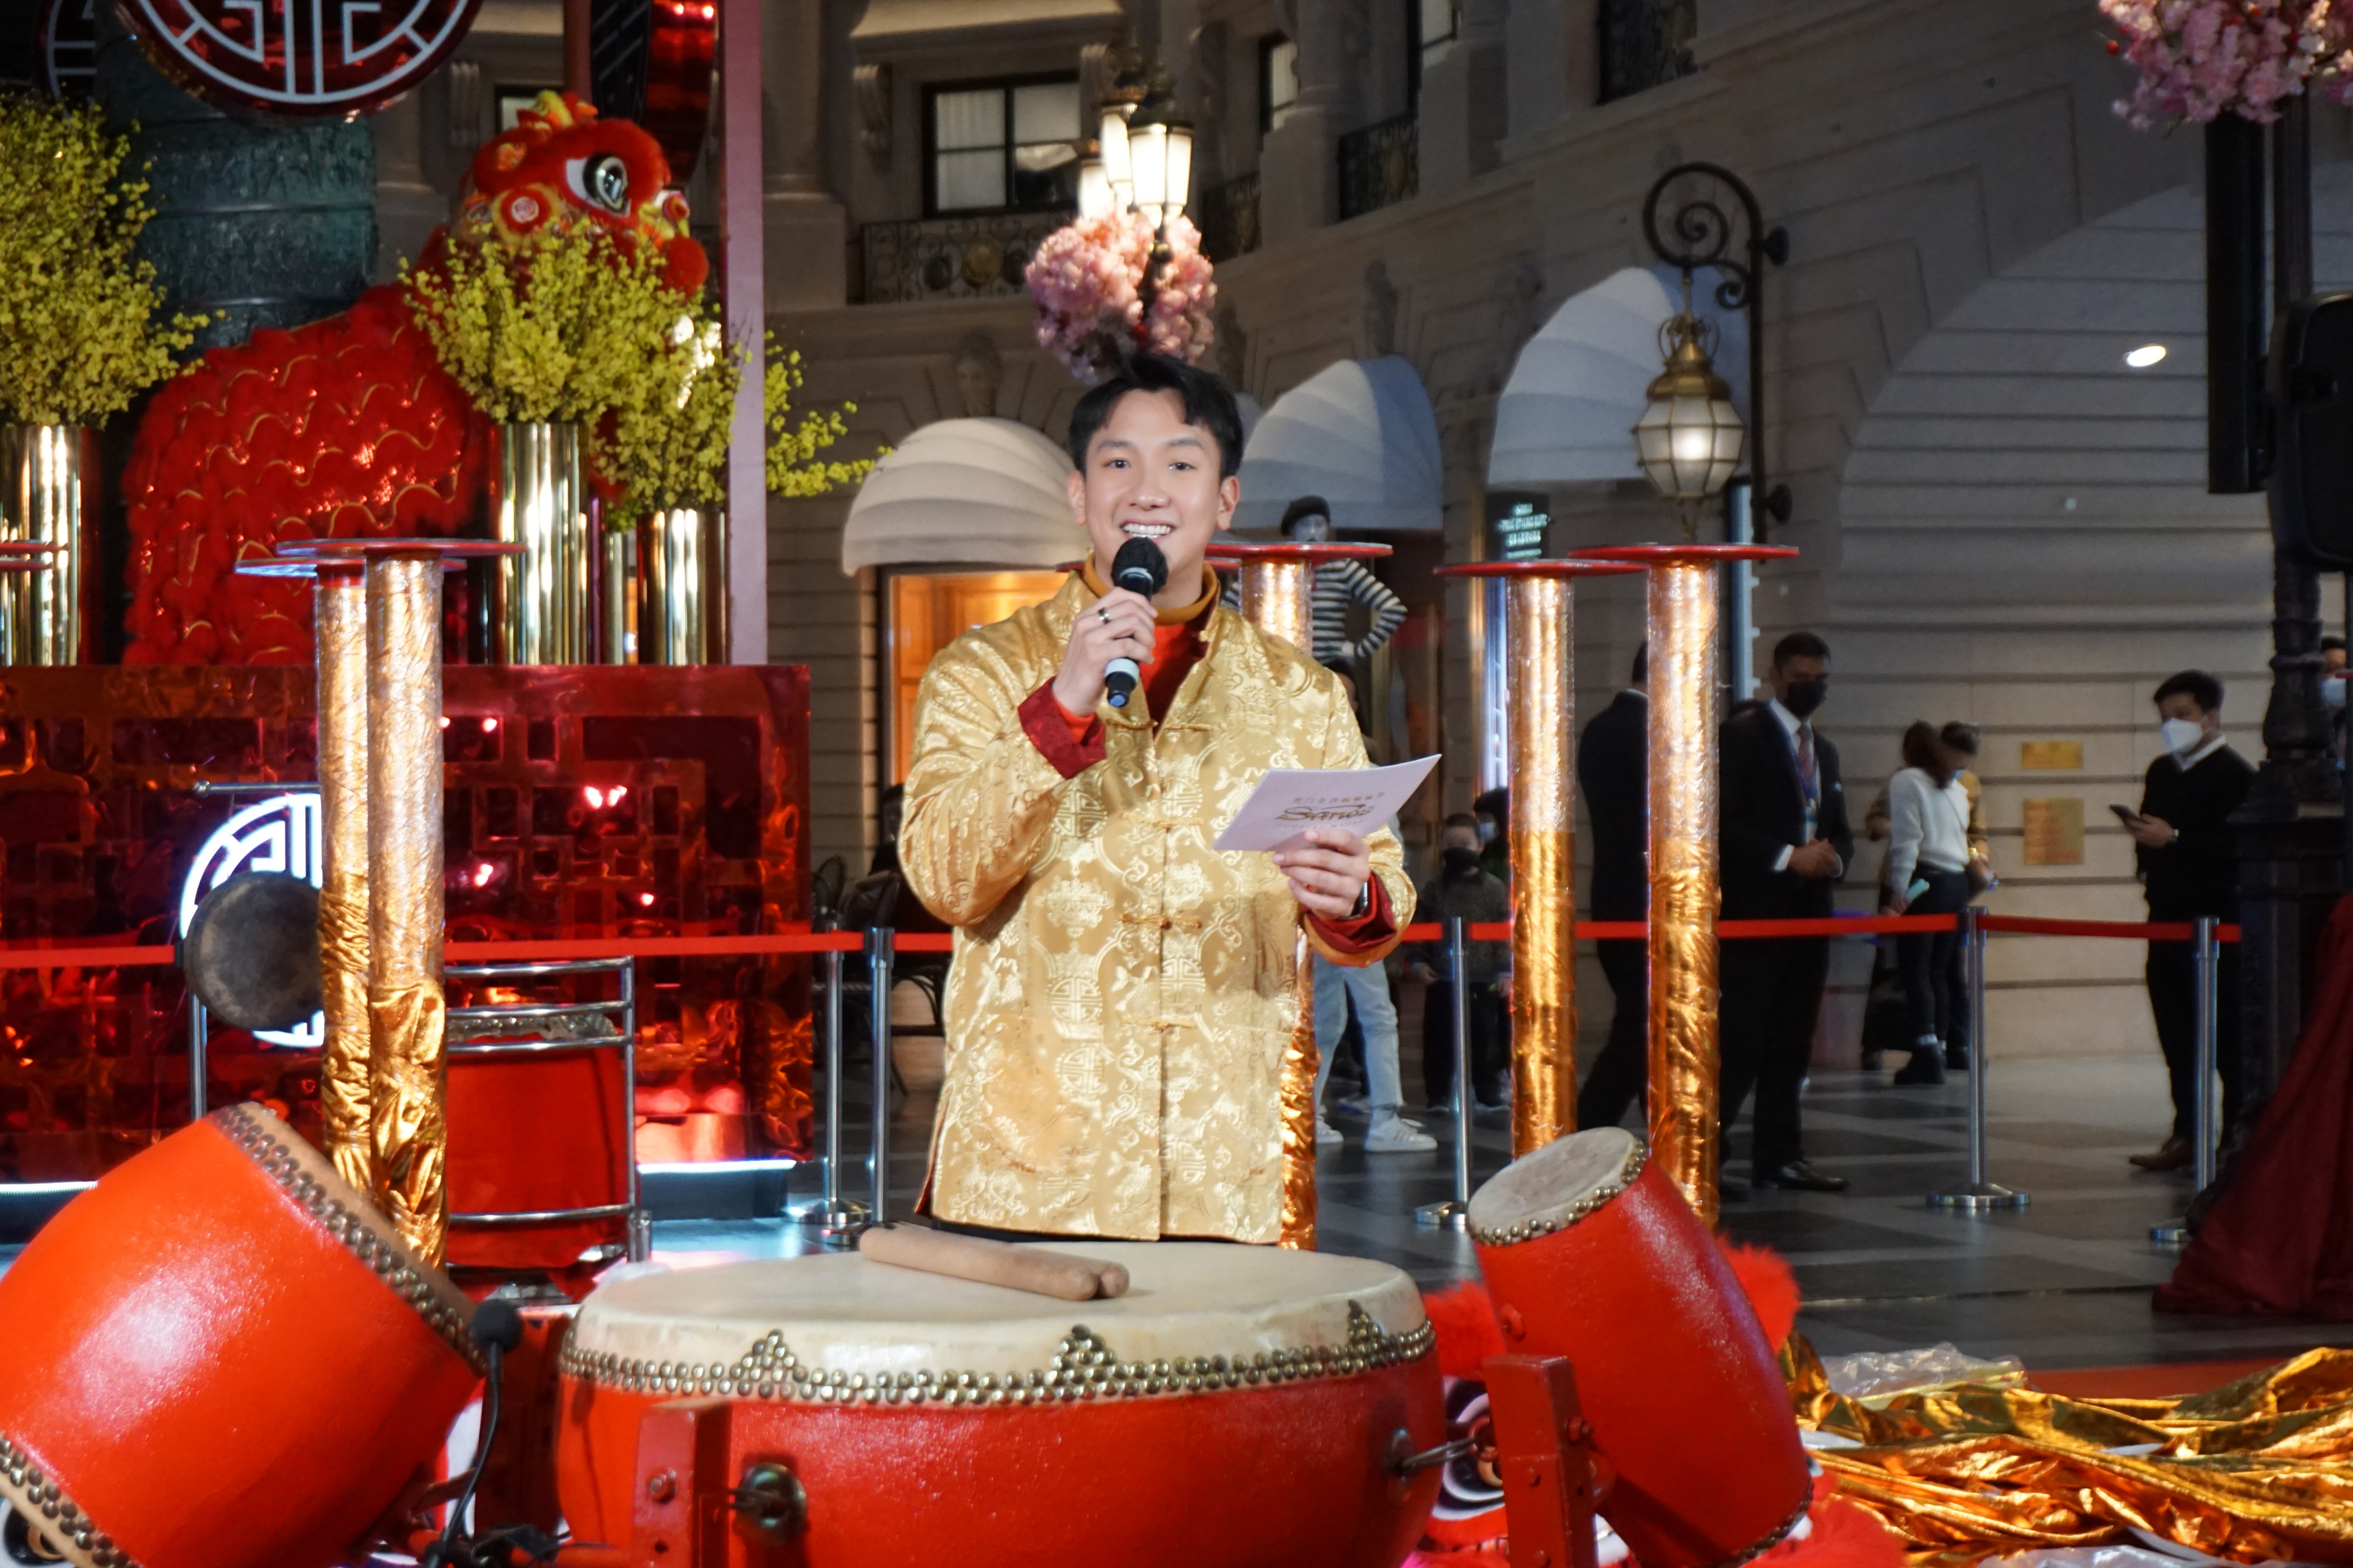 周啓陽 Elvis Chao司儀工作紀錄: 金沙中國各大購物中心「舞獅獻瑞」新年慶祝活動 (普通話、英語)